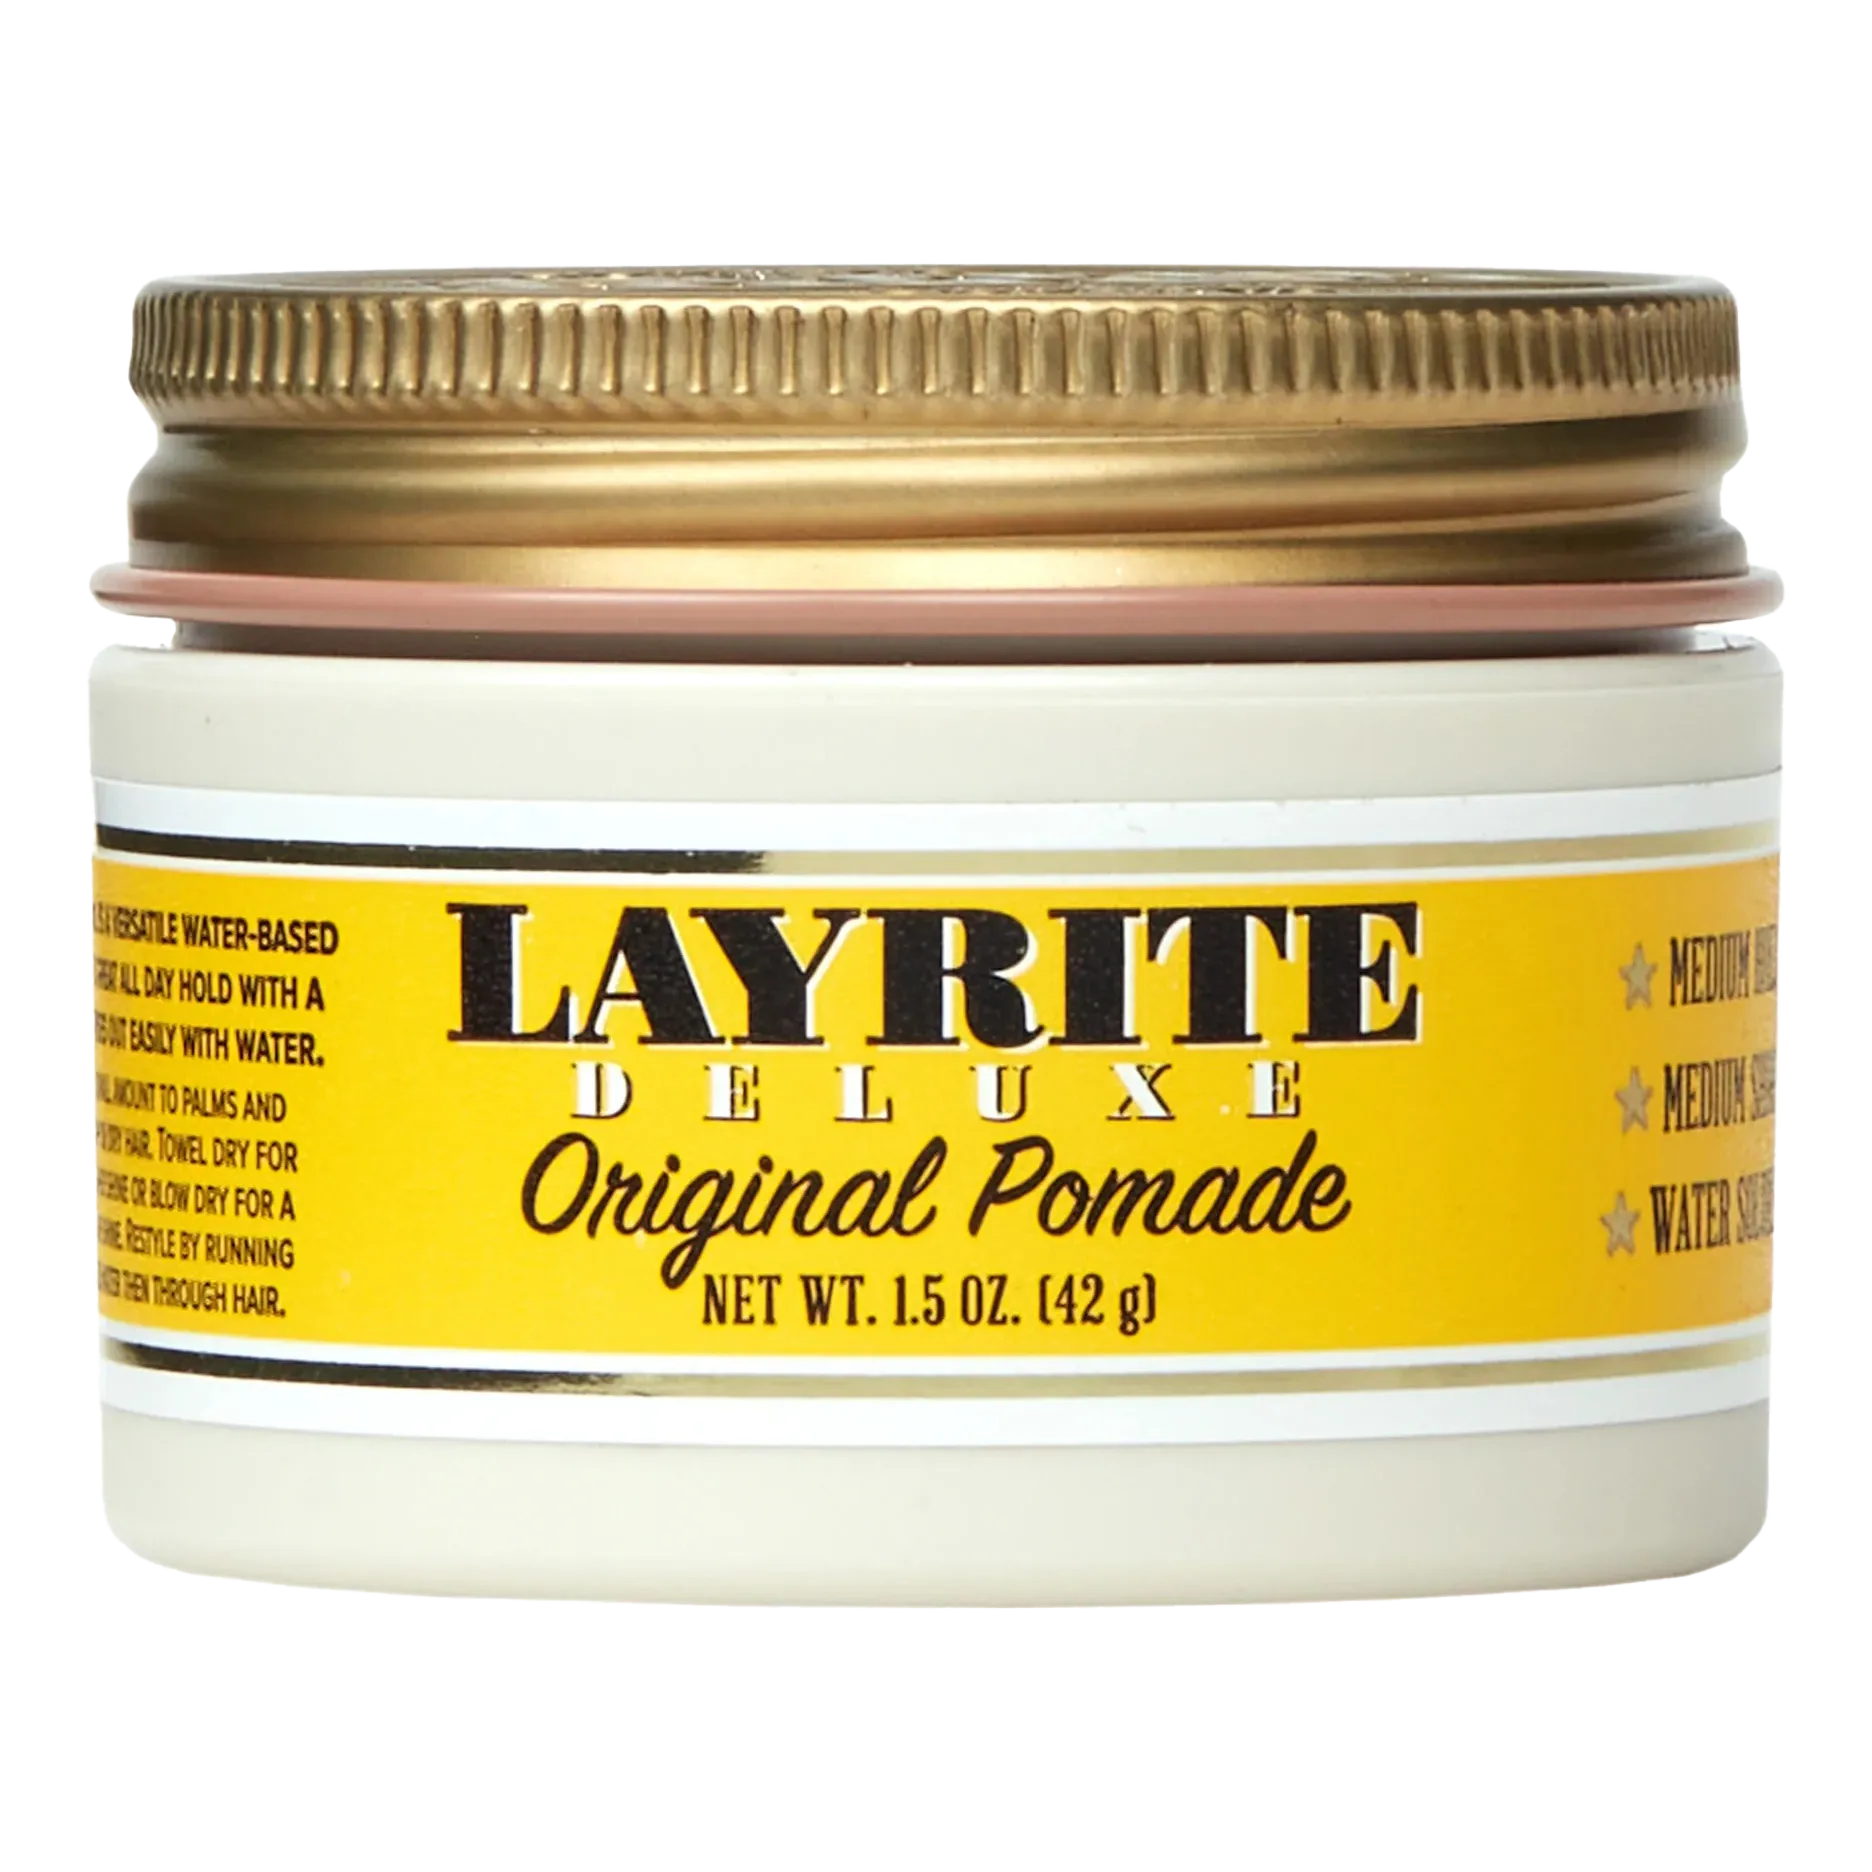 Layrite Original Pomade 42 g 